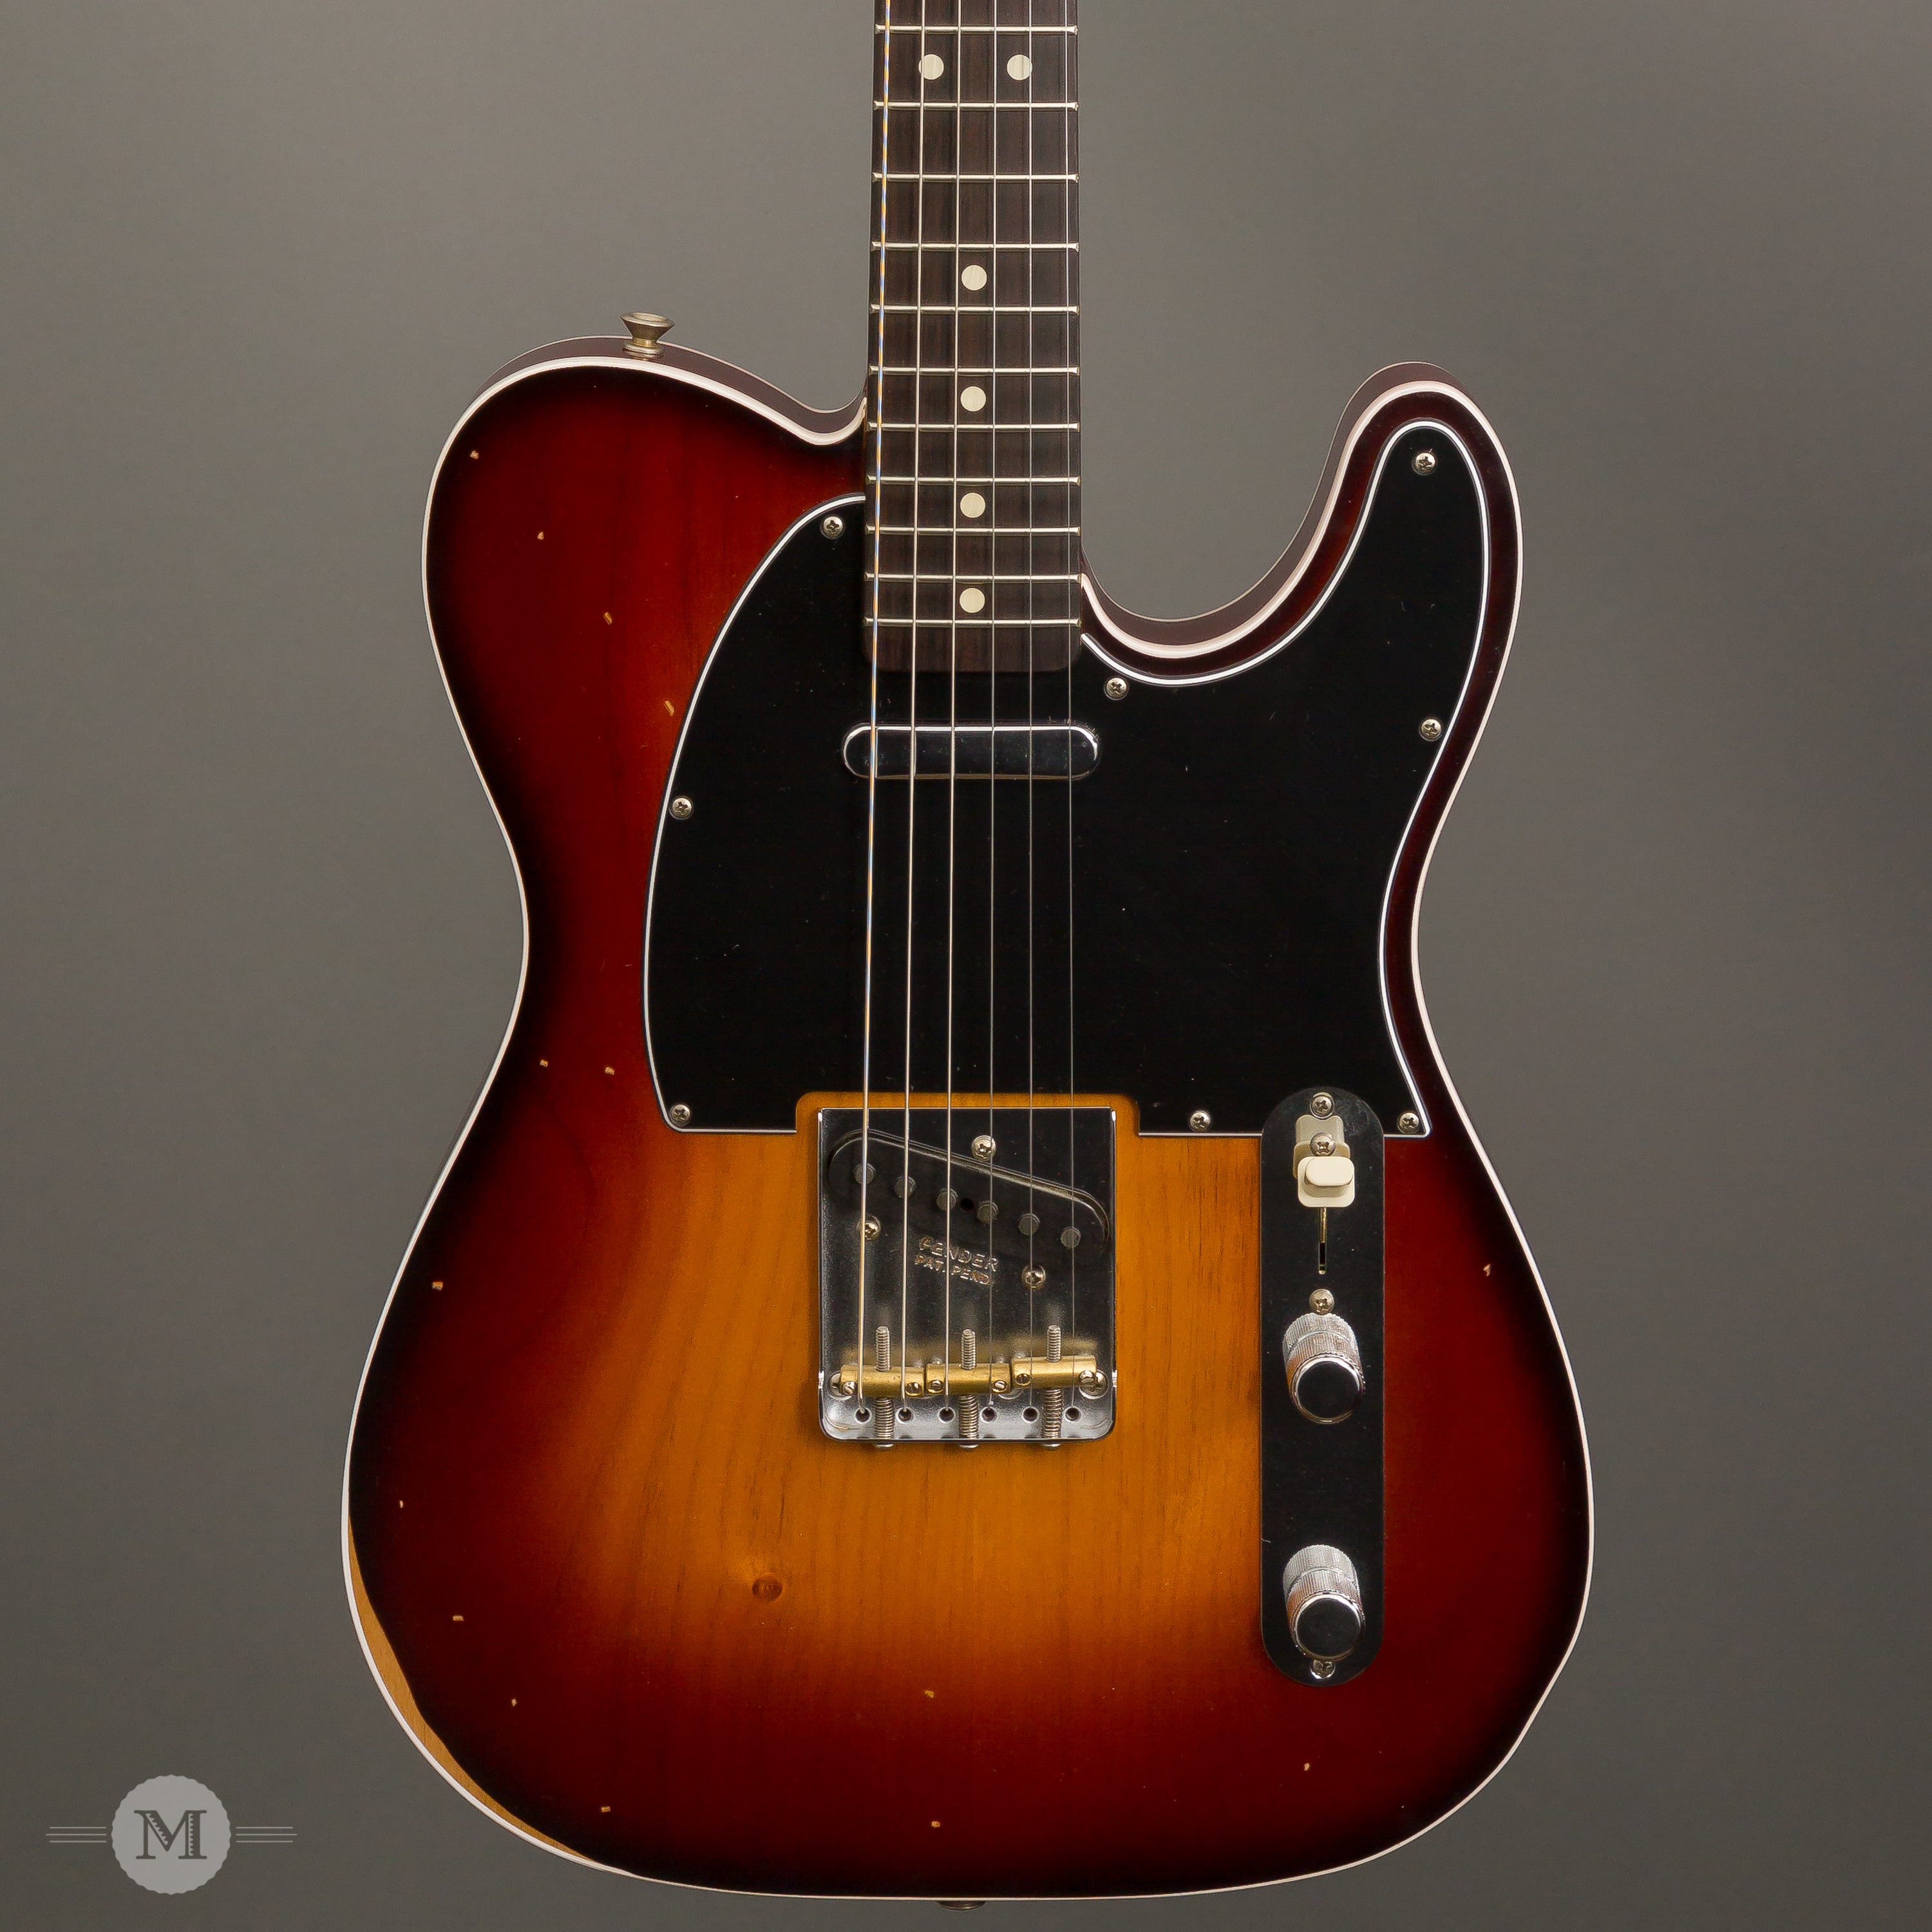 The story behind Jason Isbell's custom Fender guitar 